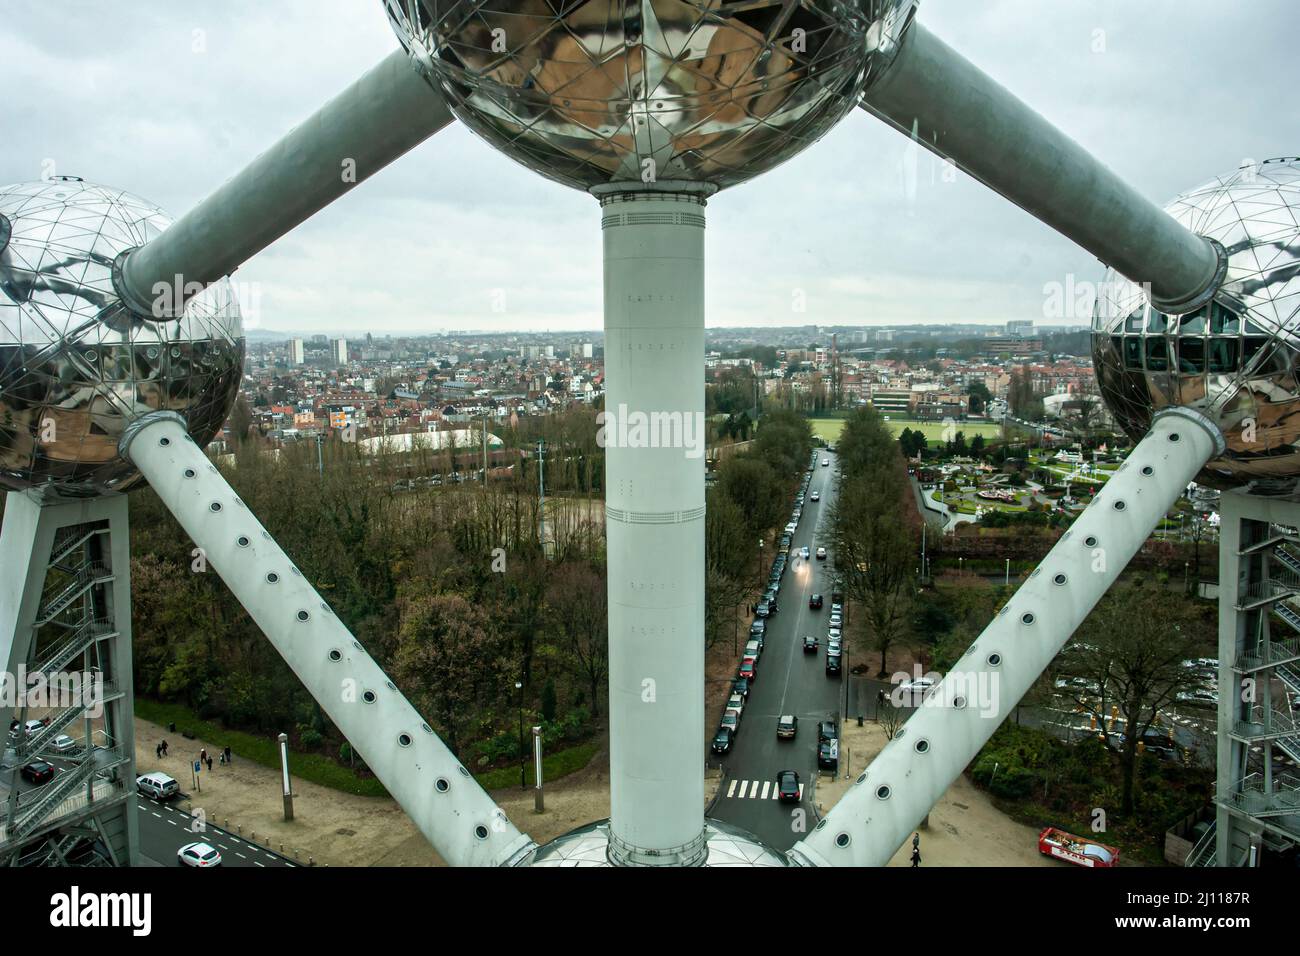 Dettaglio dell'Atomium di Bruxelles. Edificio che rappresenta un cristallo di ferro ingrandito 165 miliardi di volte. Foto Stock